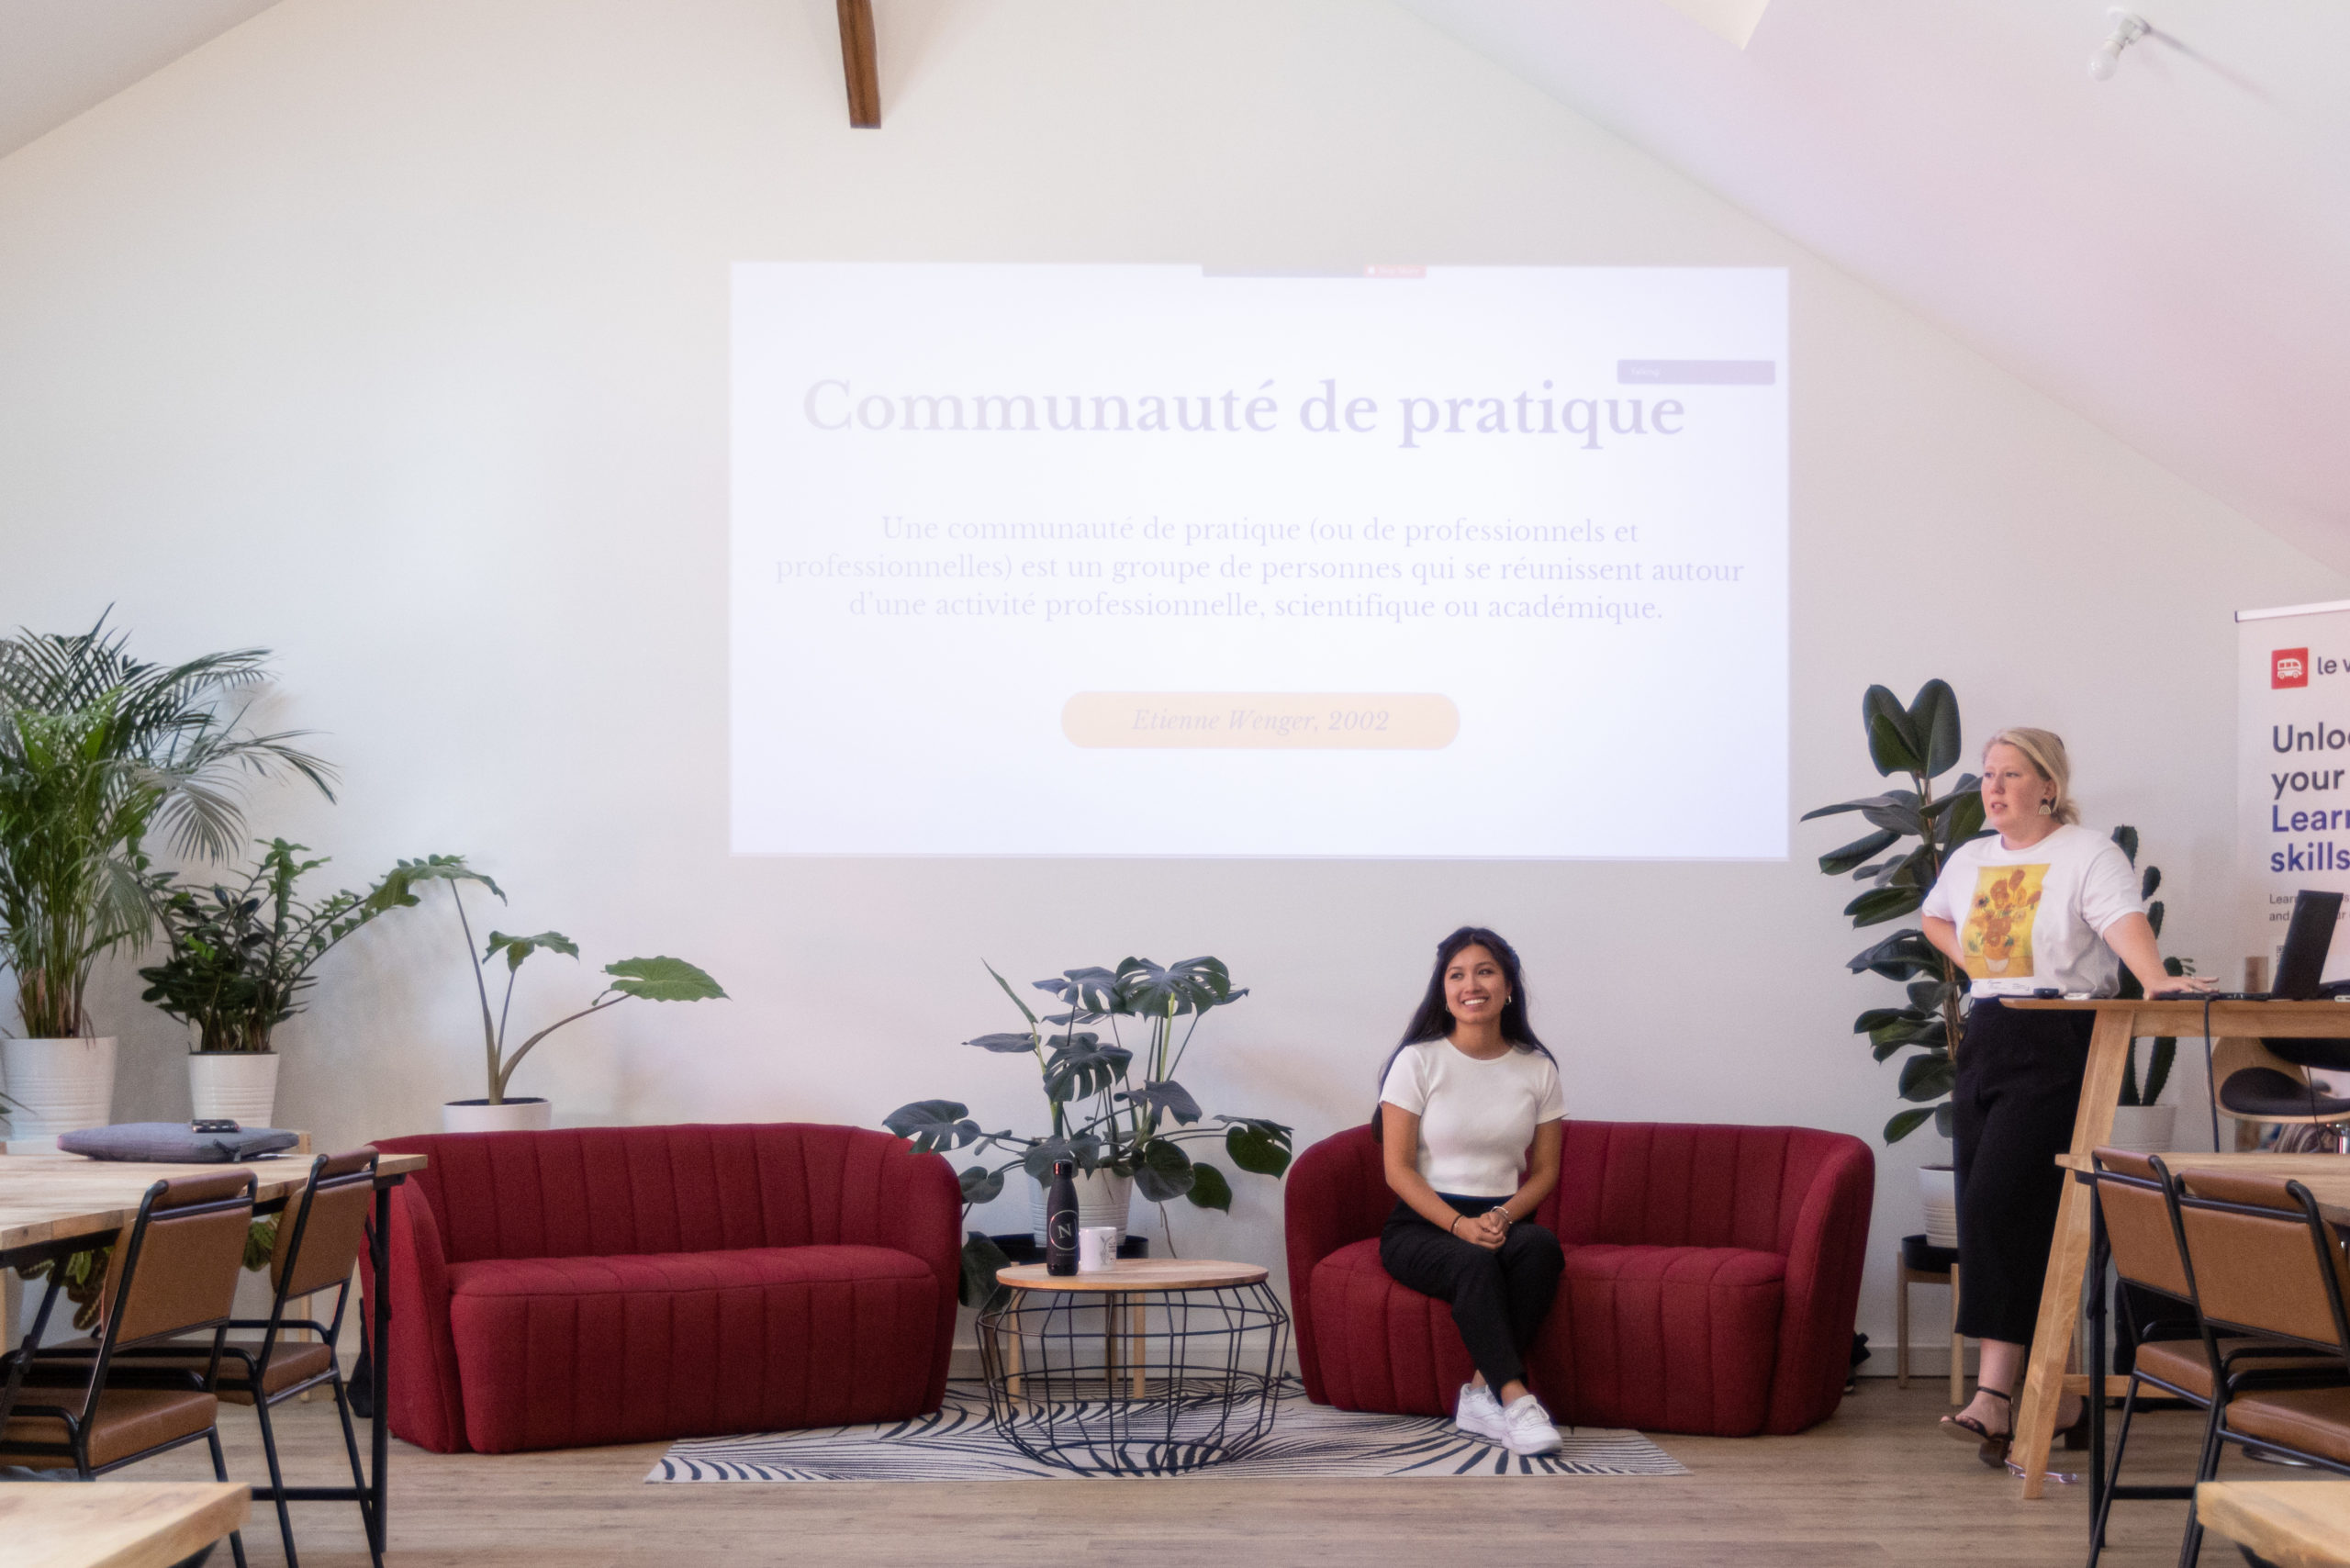 Les communautés en ligne : comment générer de l'engagement à l'échelle locale et internationale ? - Nantes Digital Week 2022